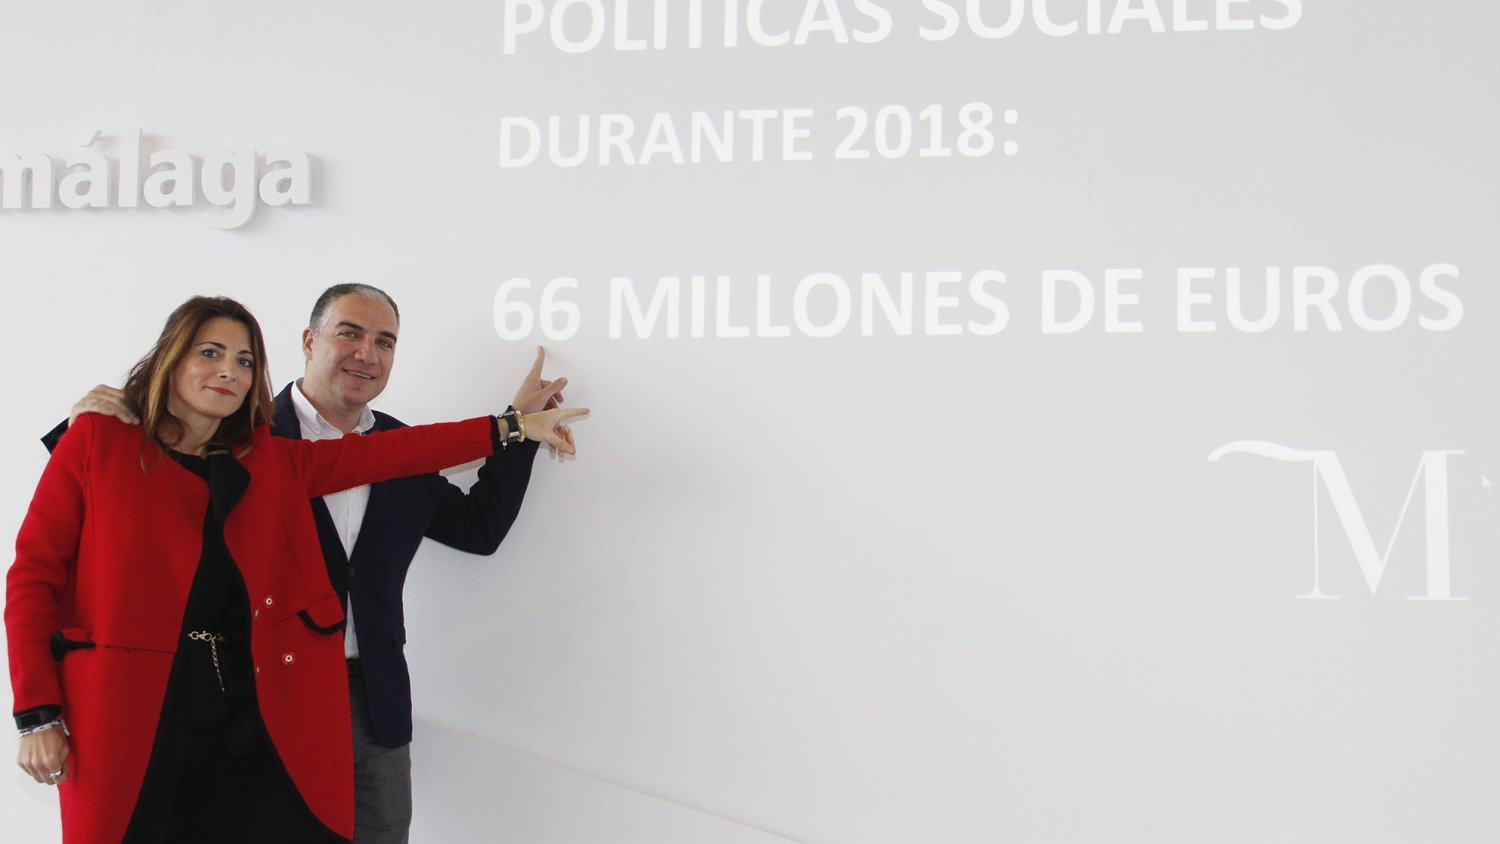 La Diputación destina este año 66 millones de euros a políticas sociales